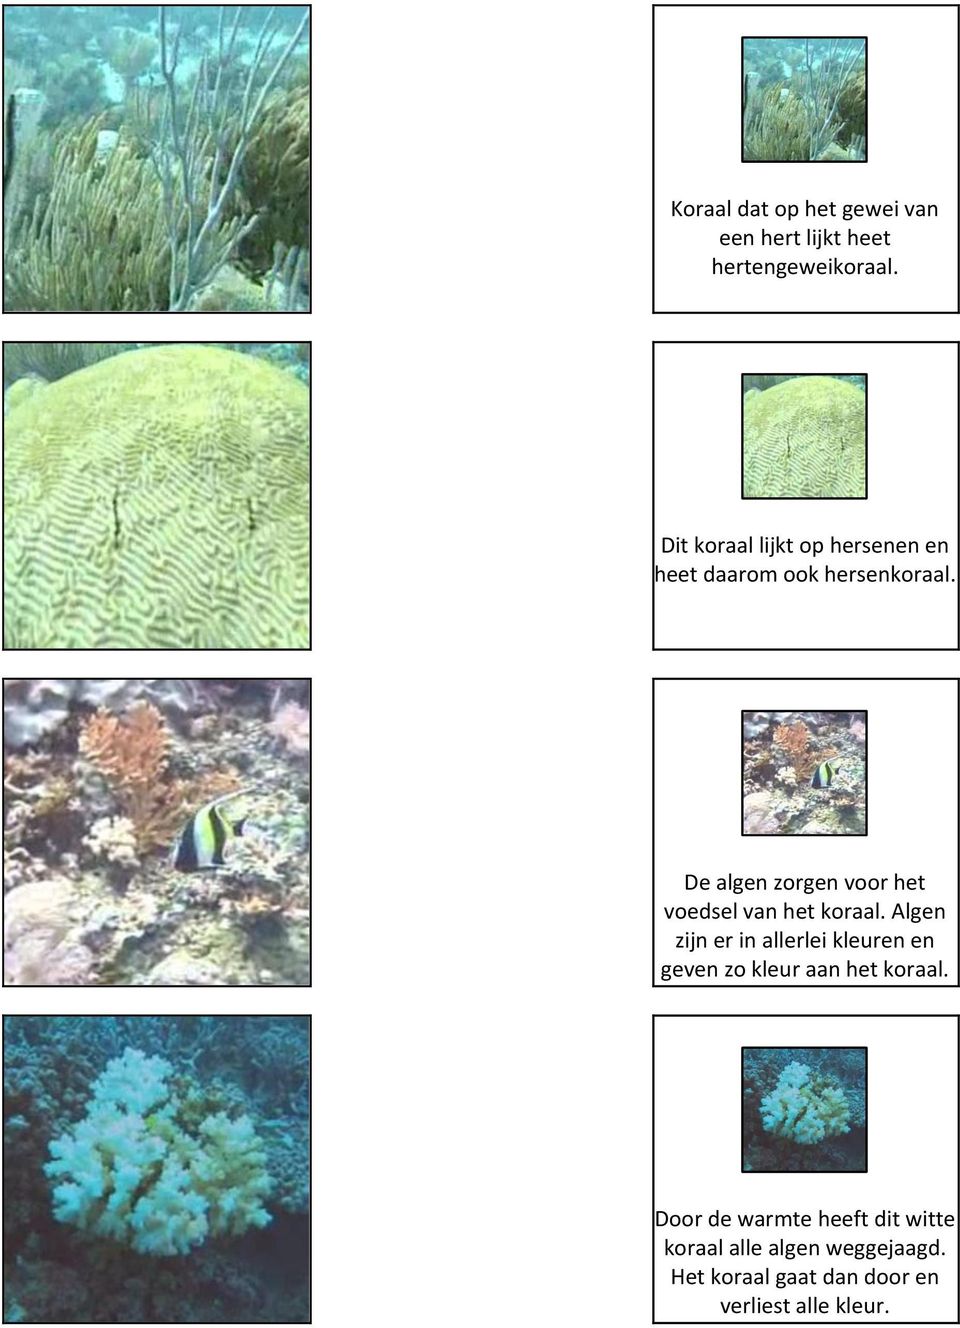 De algen zorgen voor het voedsel van het koraal.